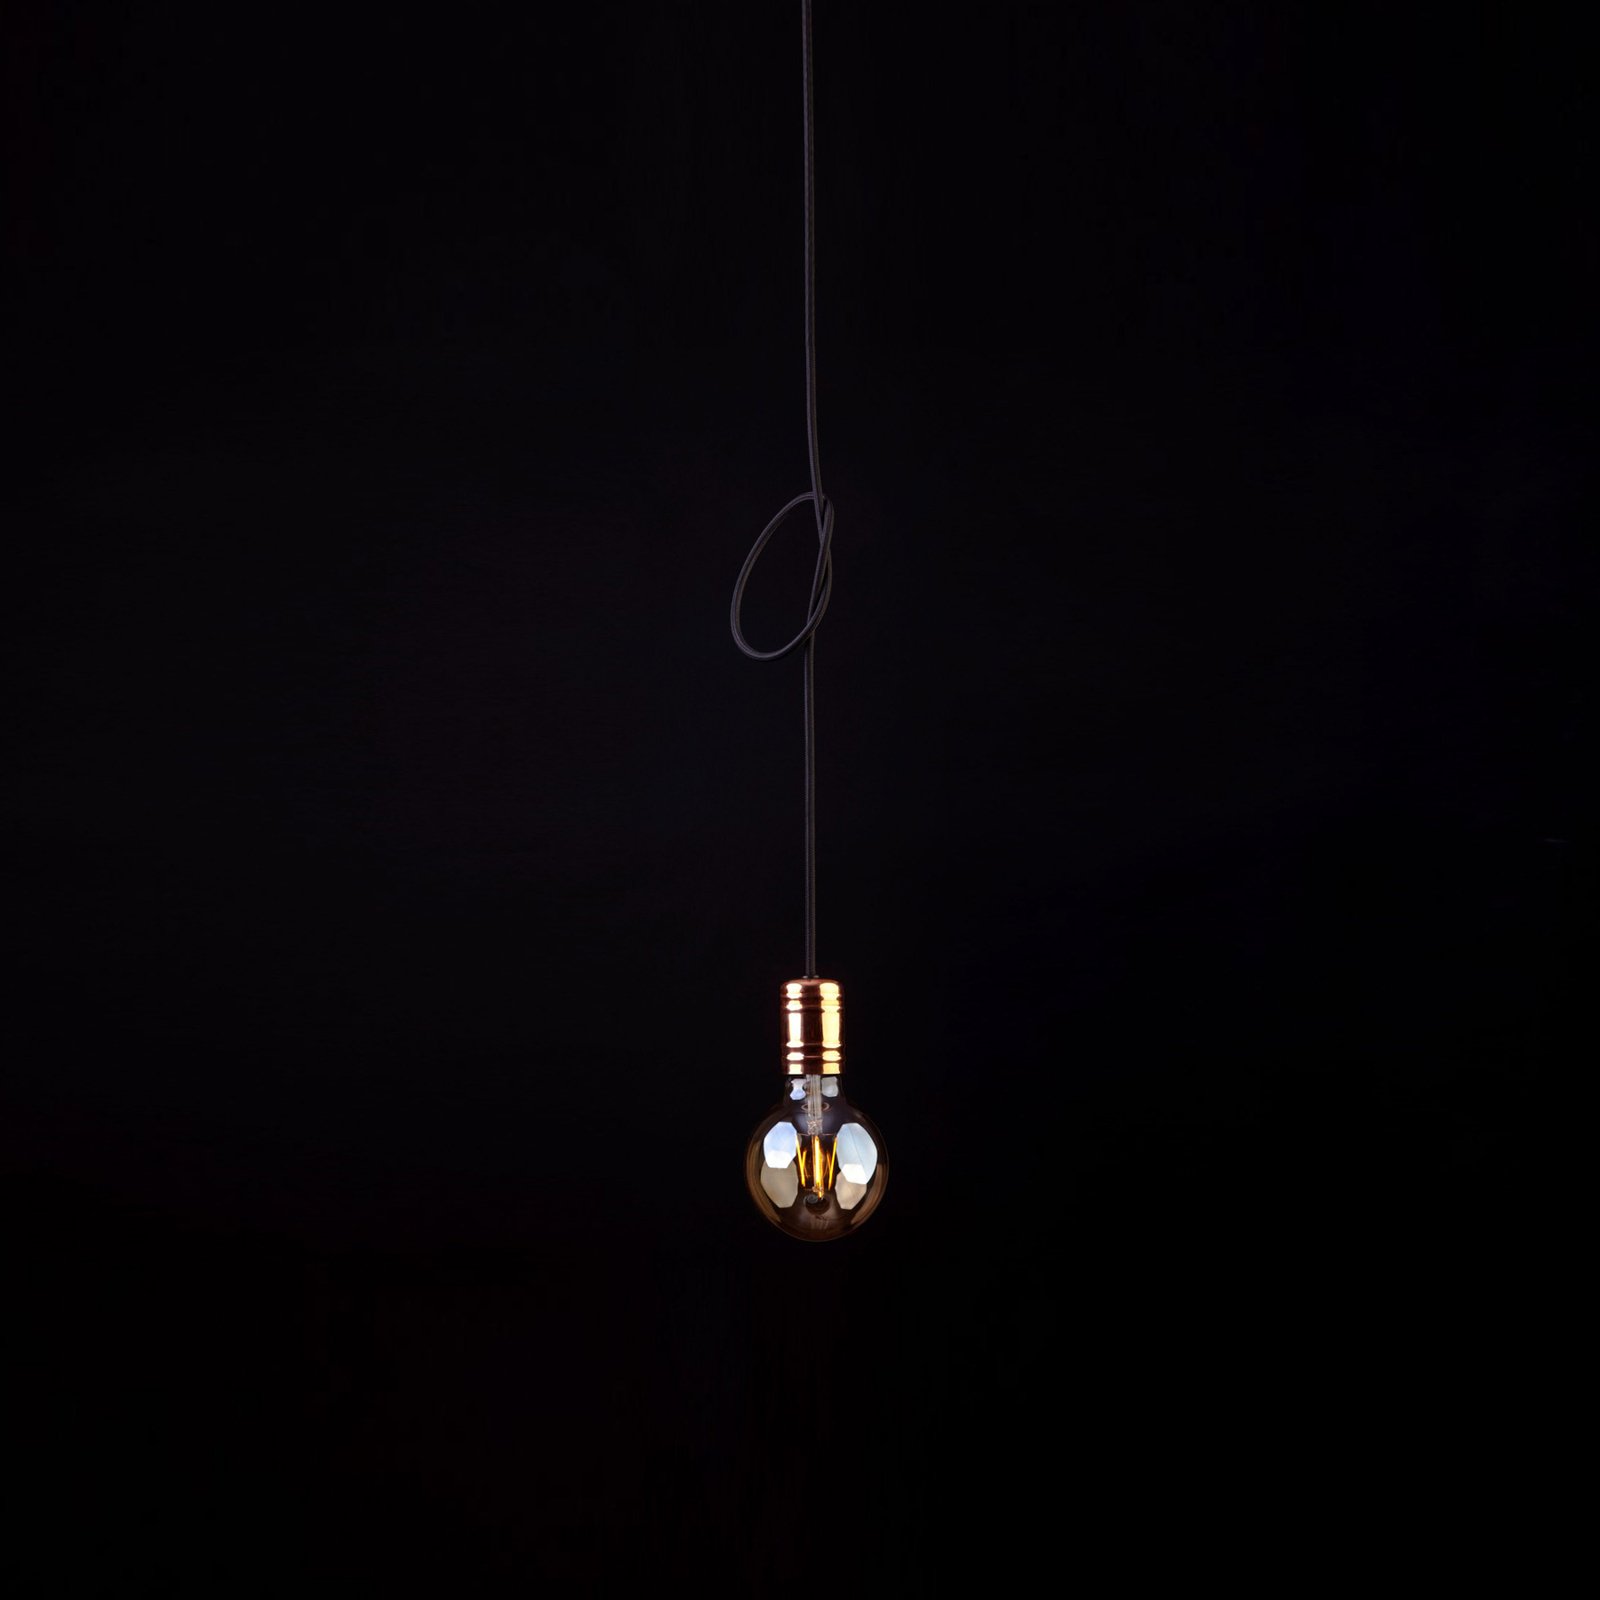 Kabelsko viseče svetilo, črno/medeno, enojna svetilka